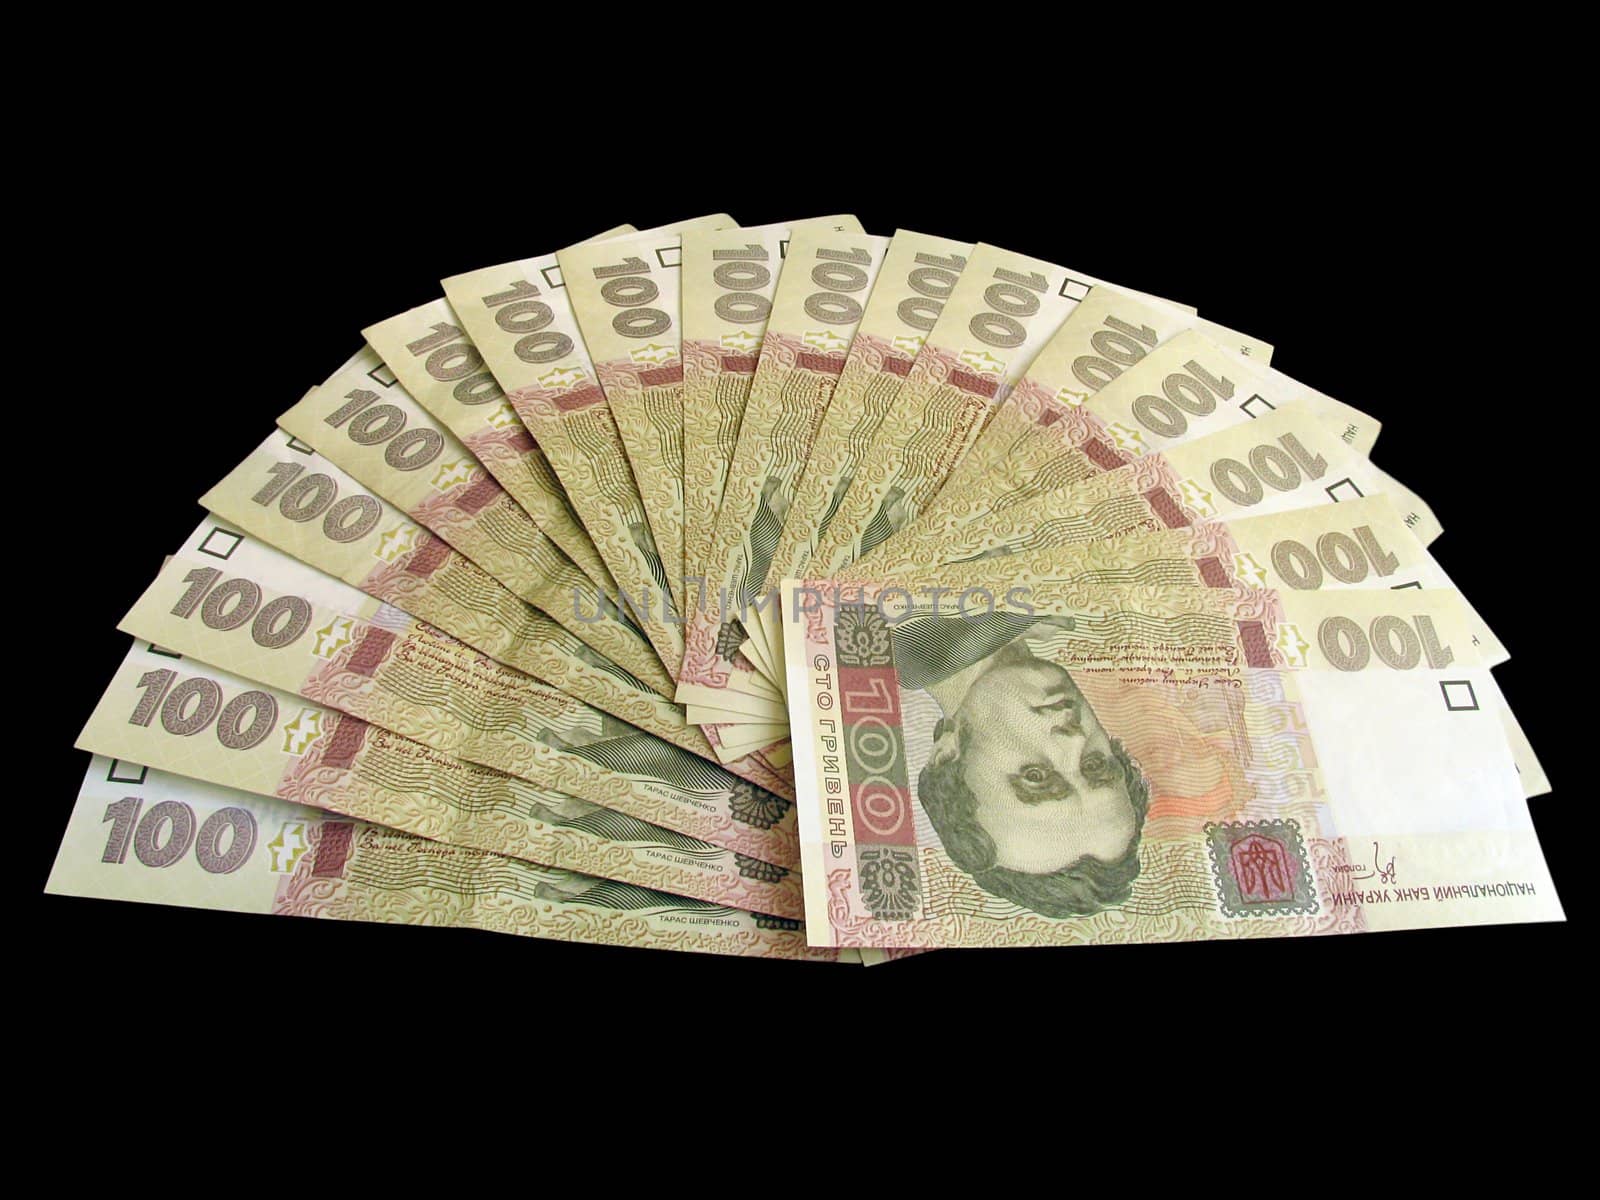 fan-shaped money by romantiche